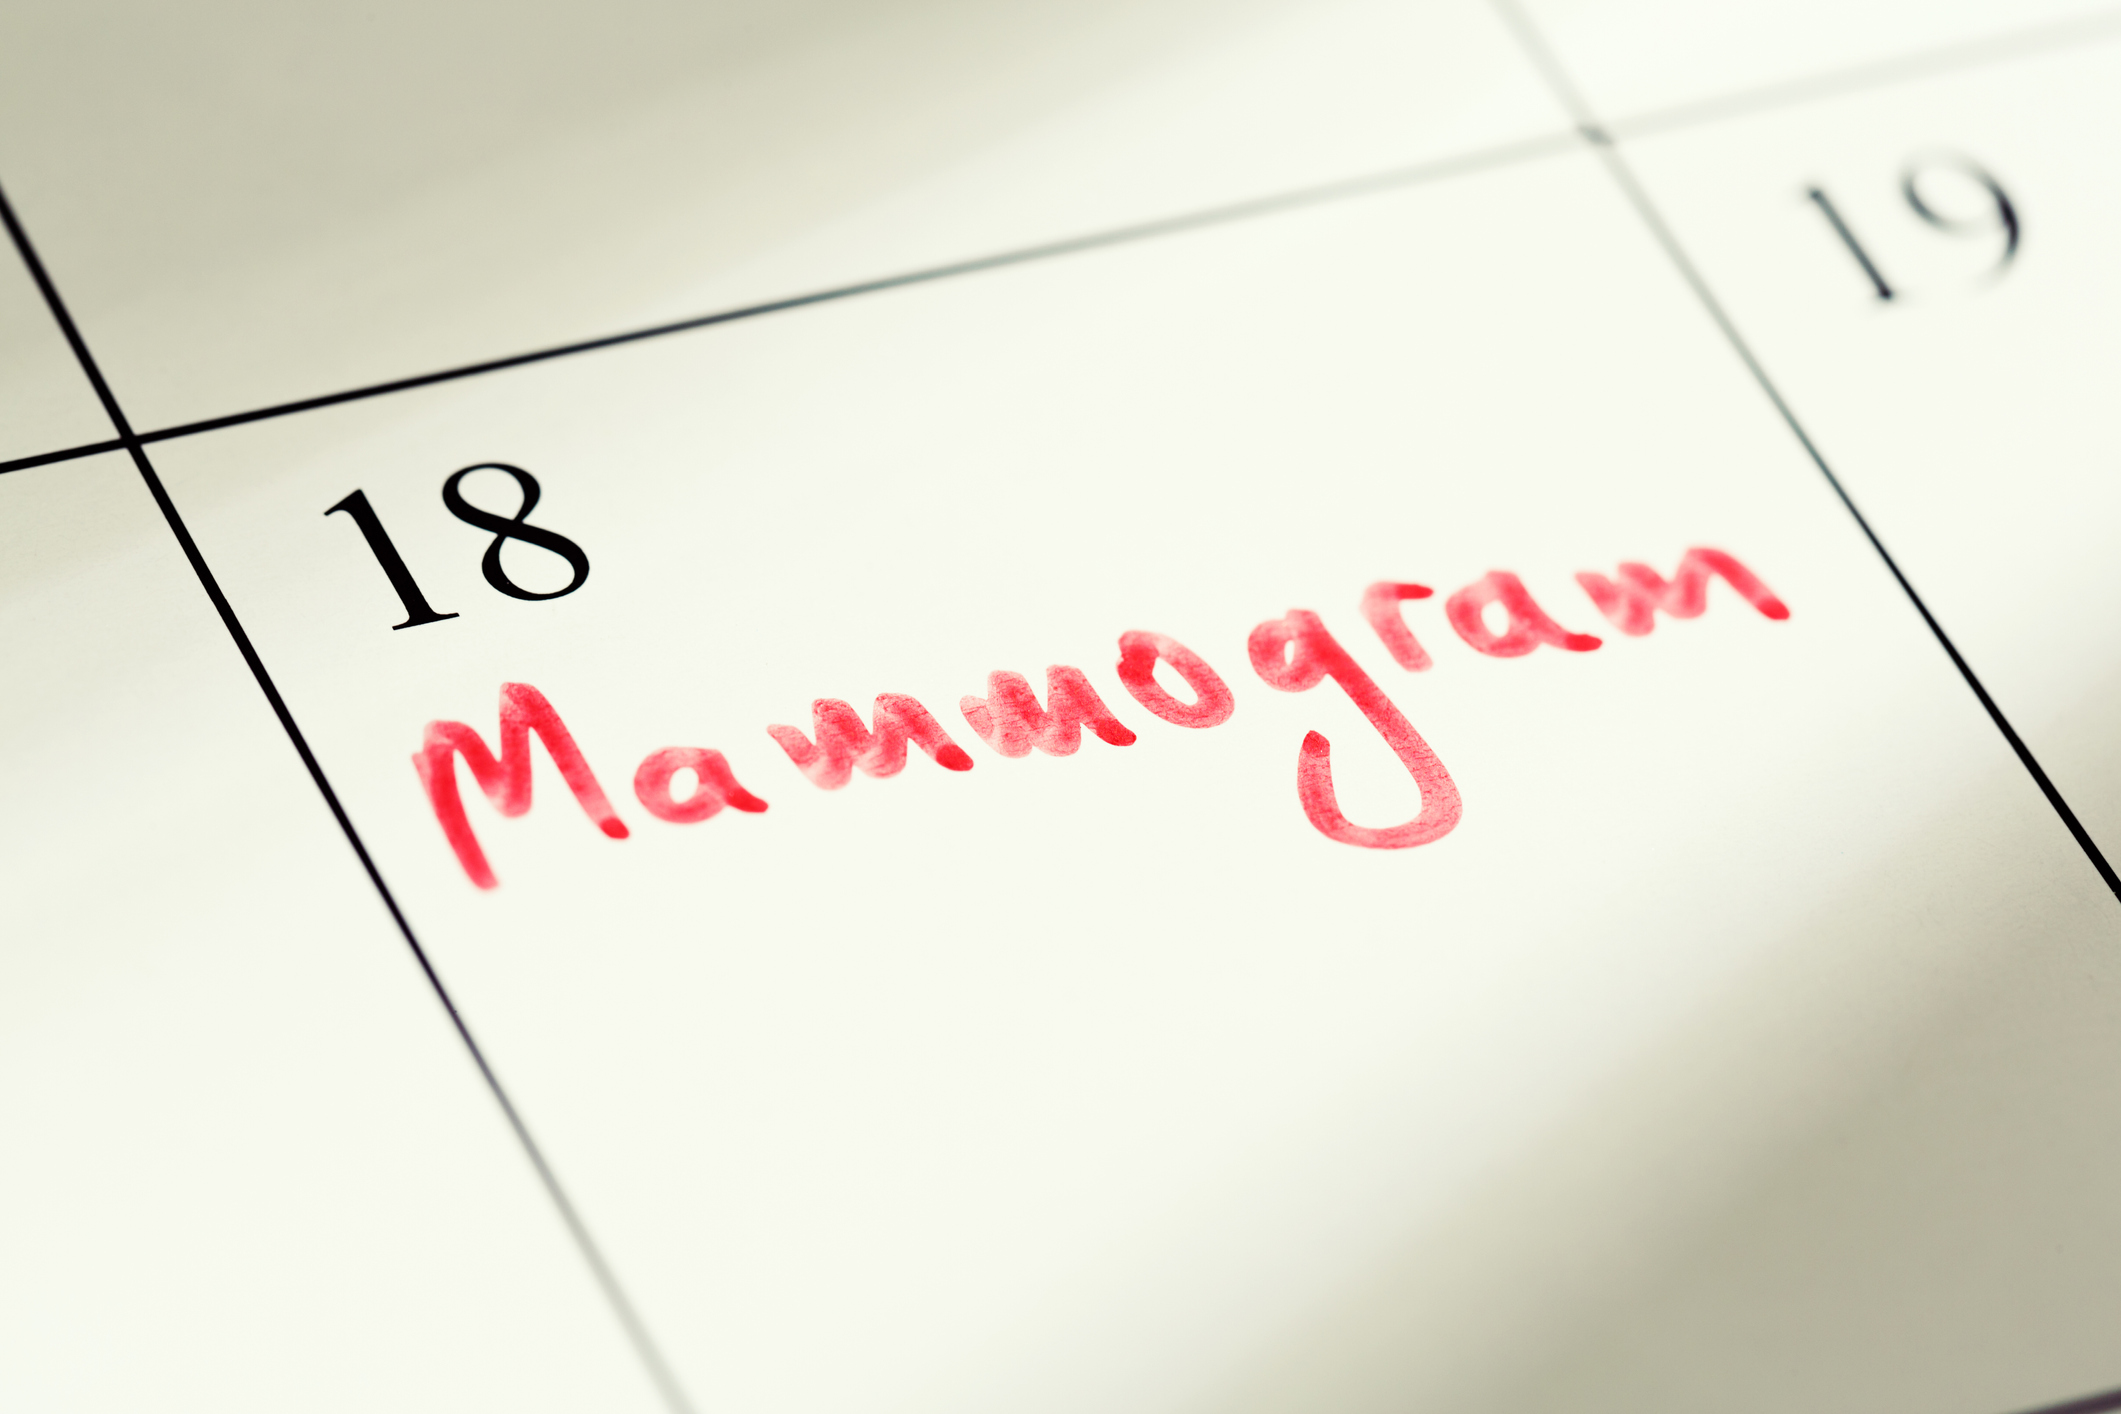 Calendar Day 18 with Mammogram text